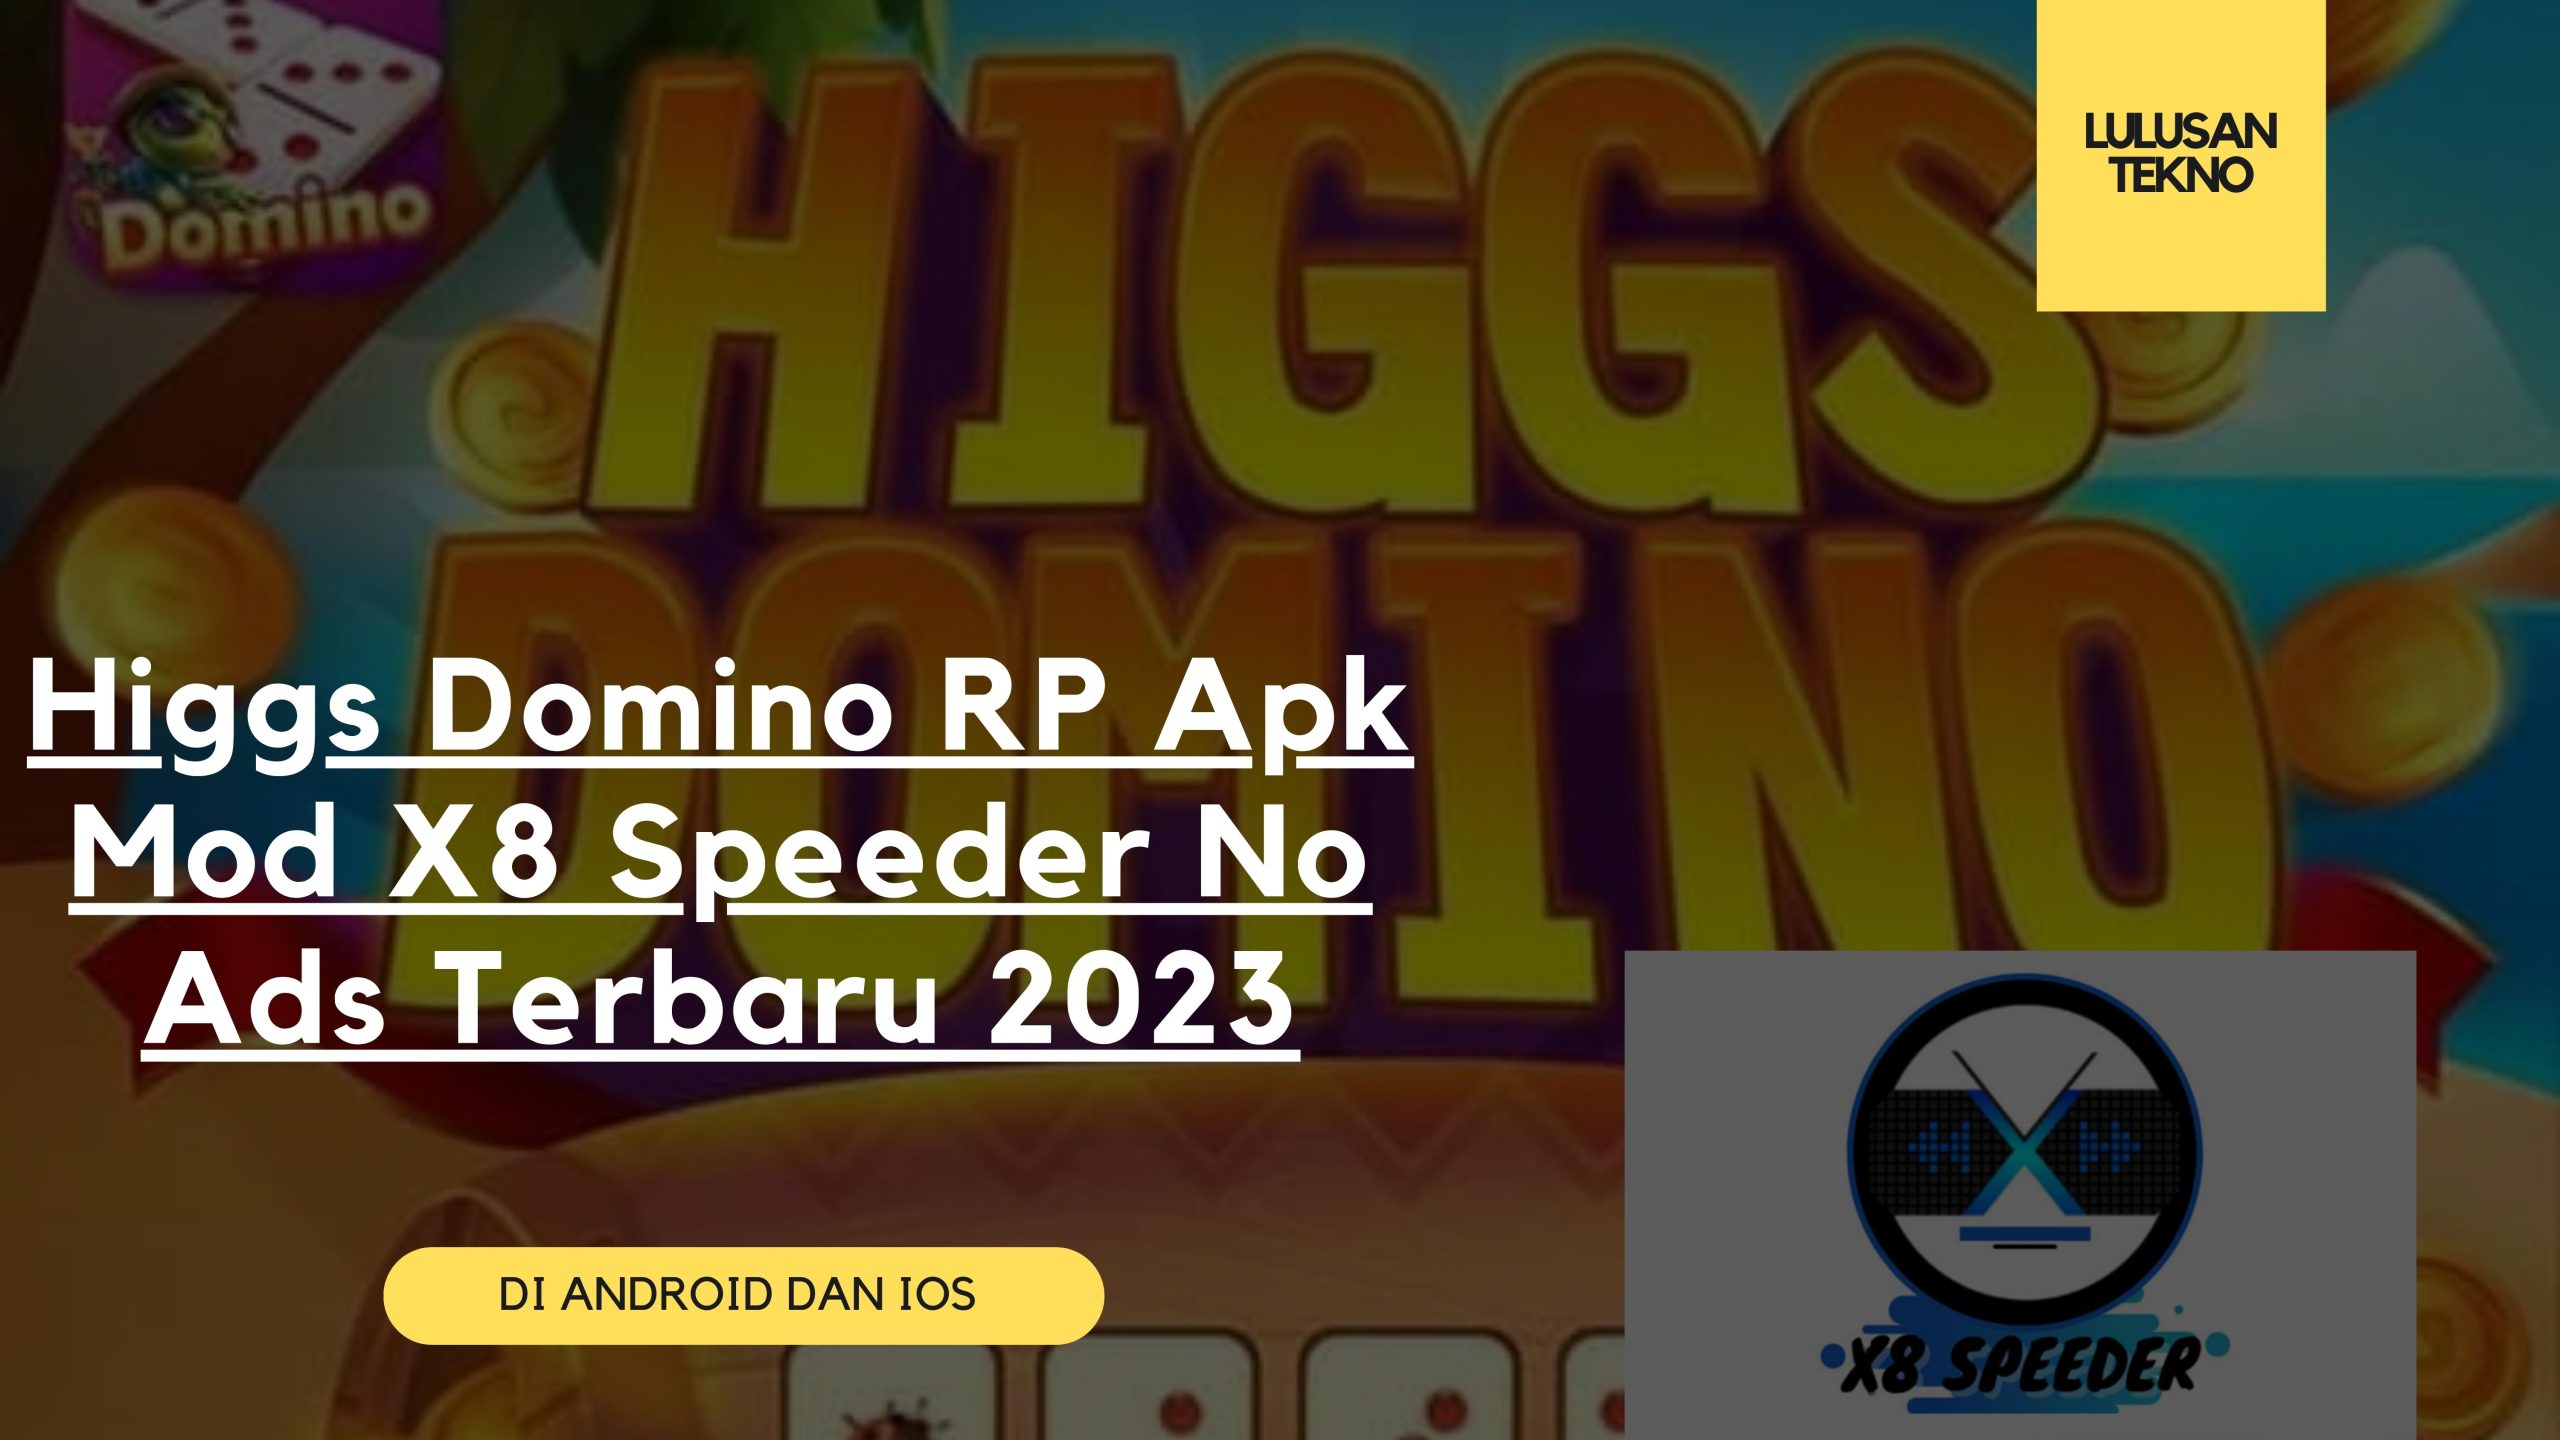 Higgs Domino RP Apk Mod X8 Speeder No Ads Terbaru 2023